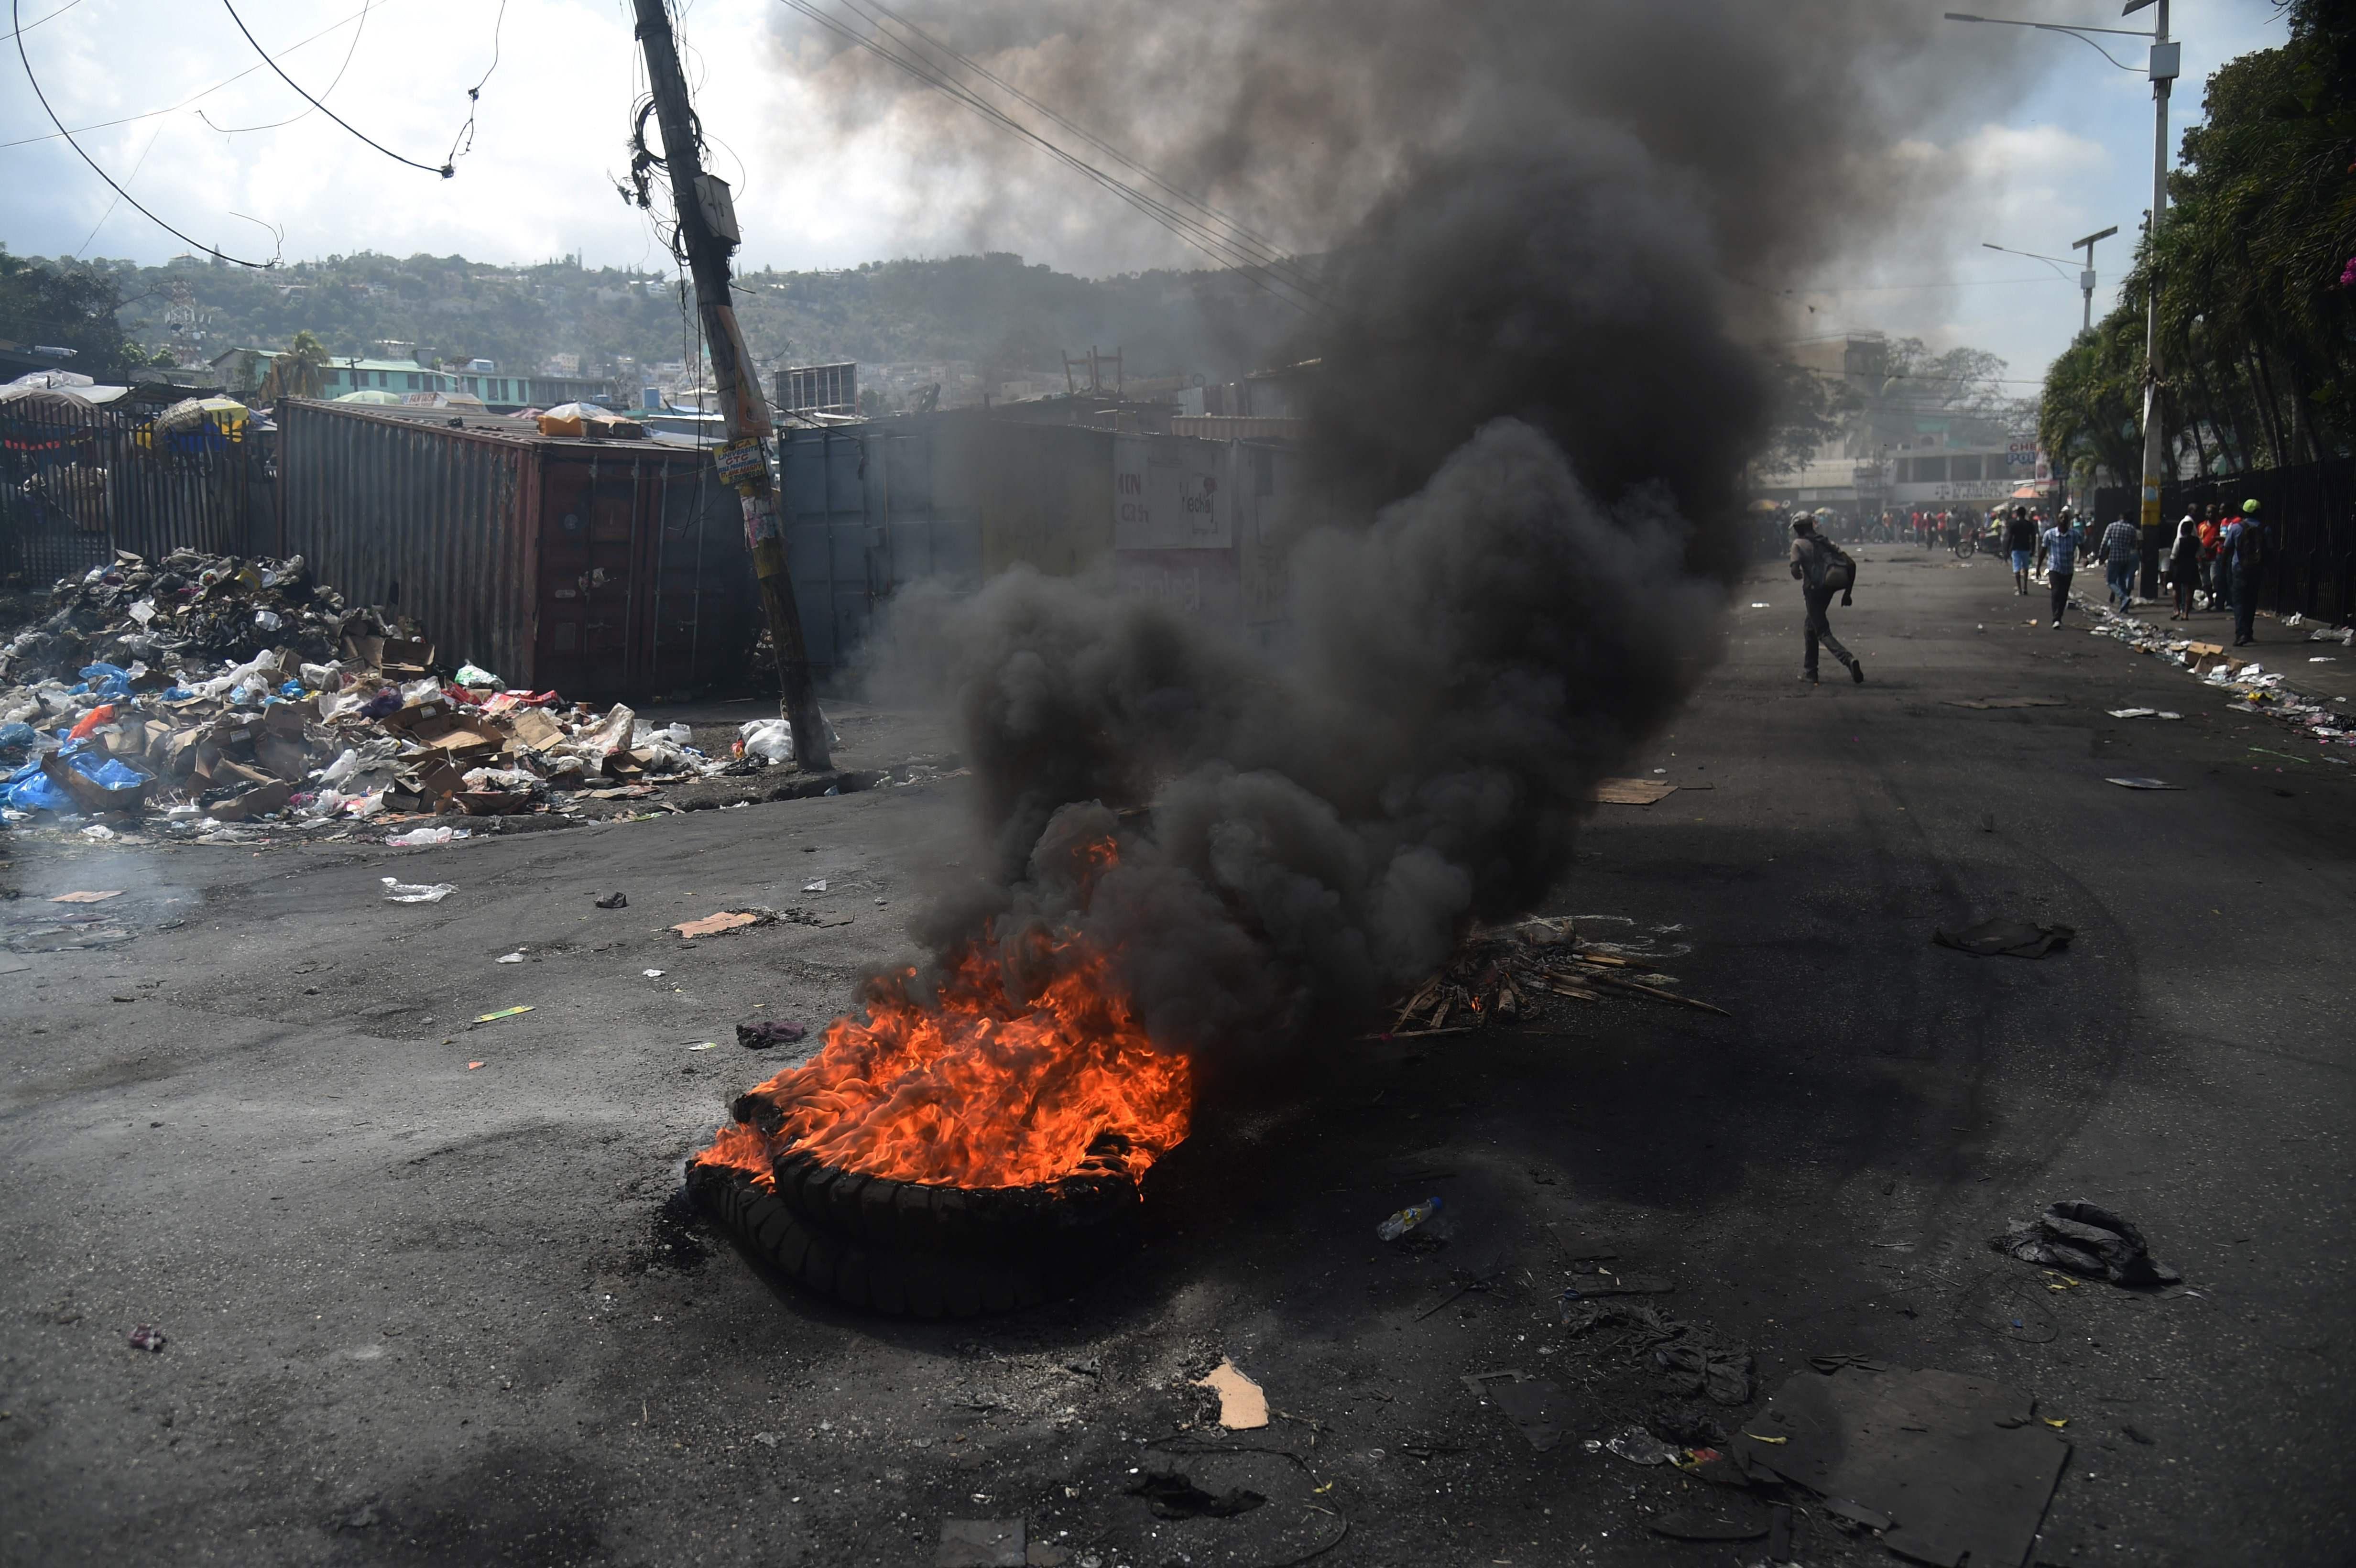 Haitide göstericiler yine sokaklarda